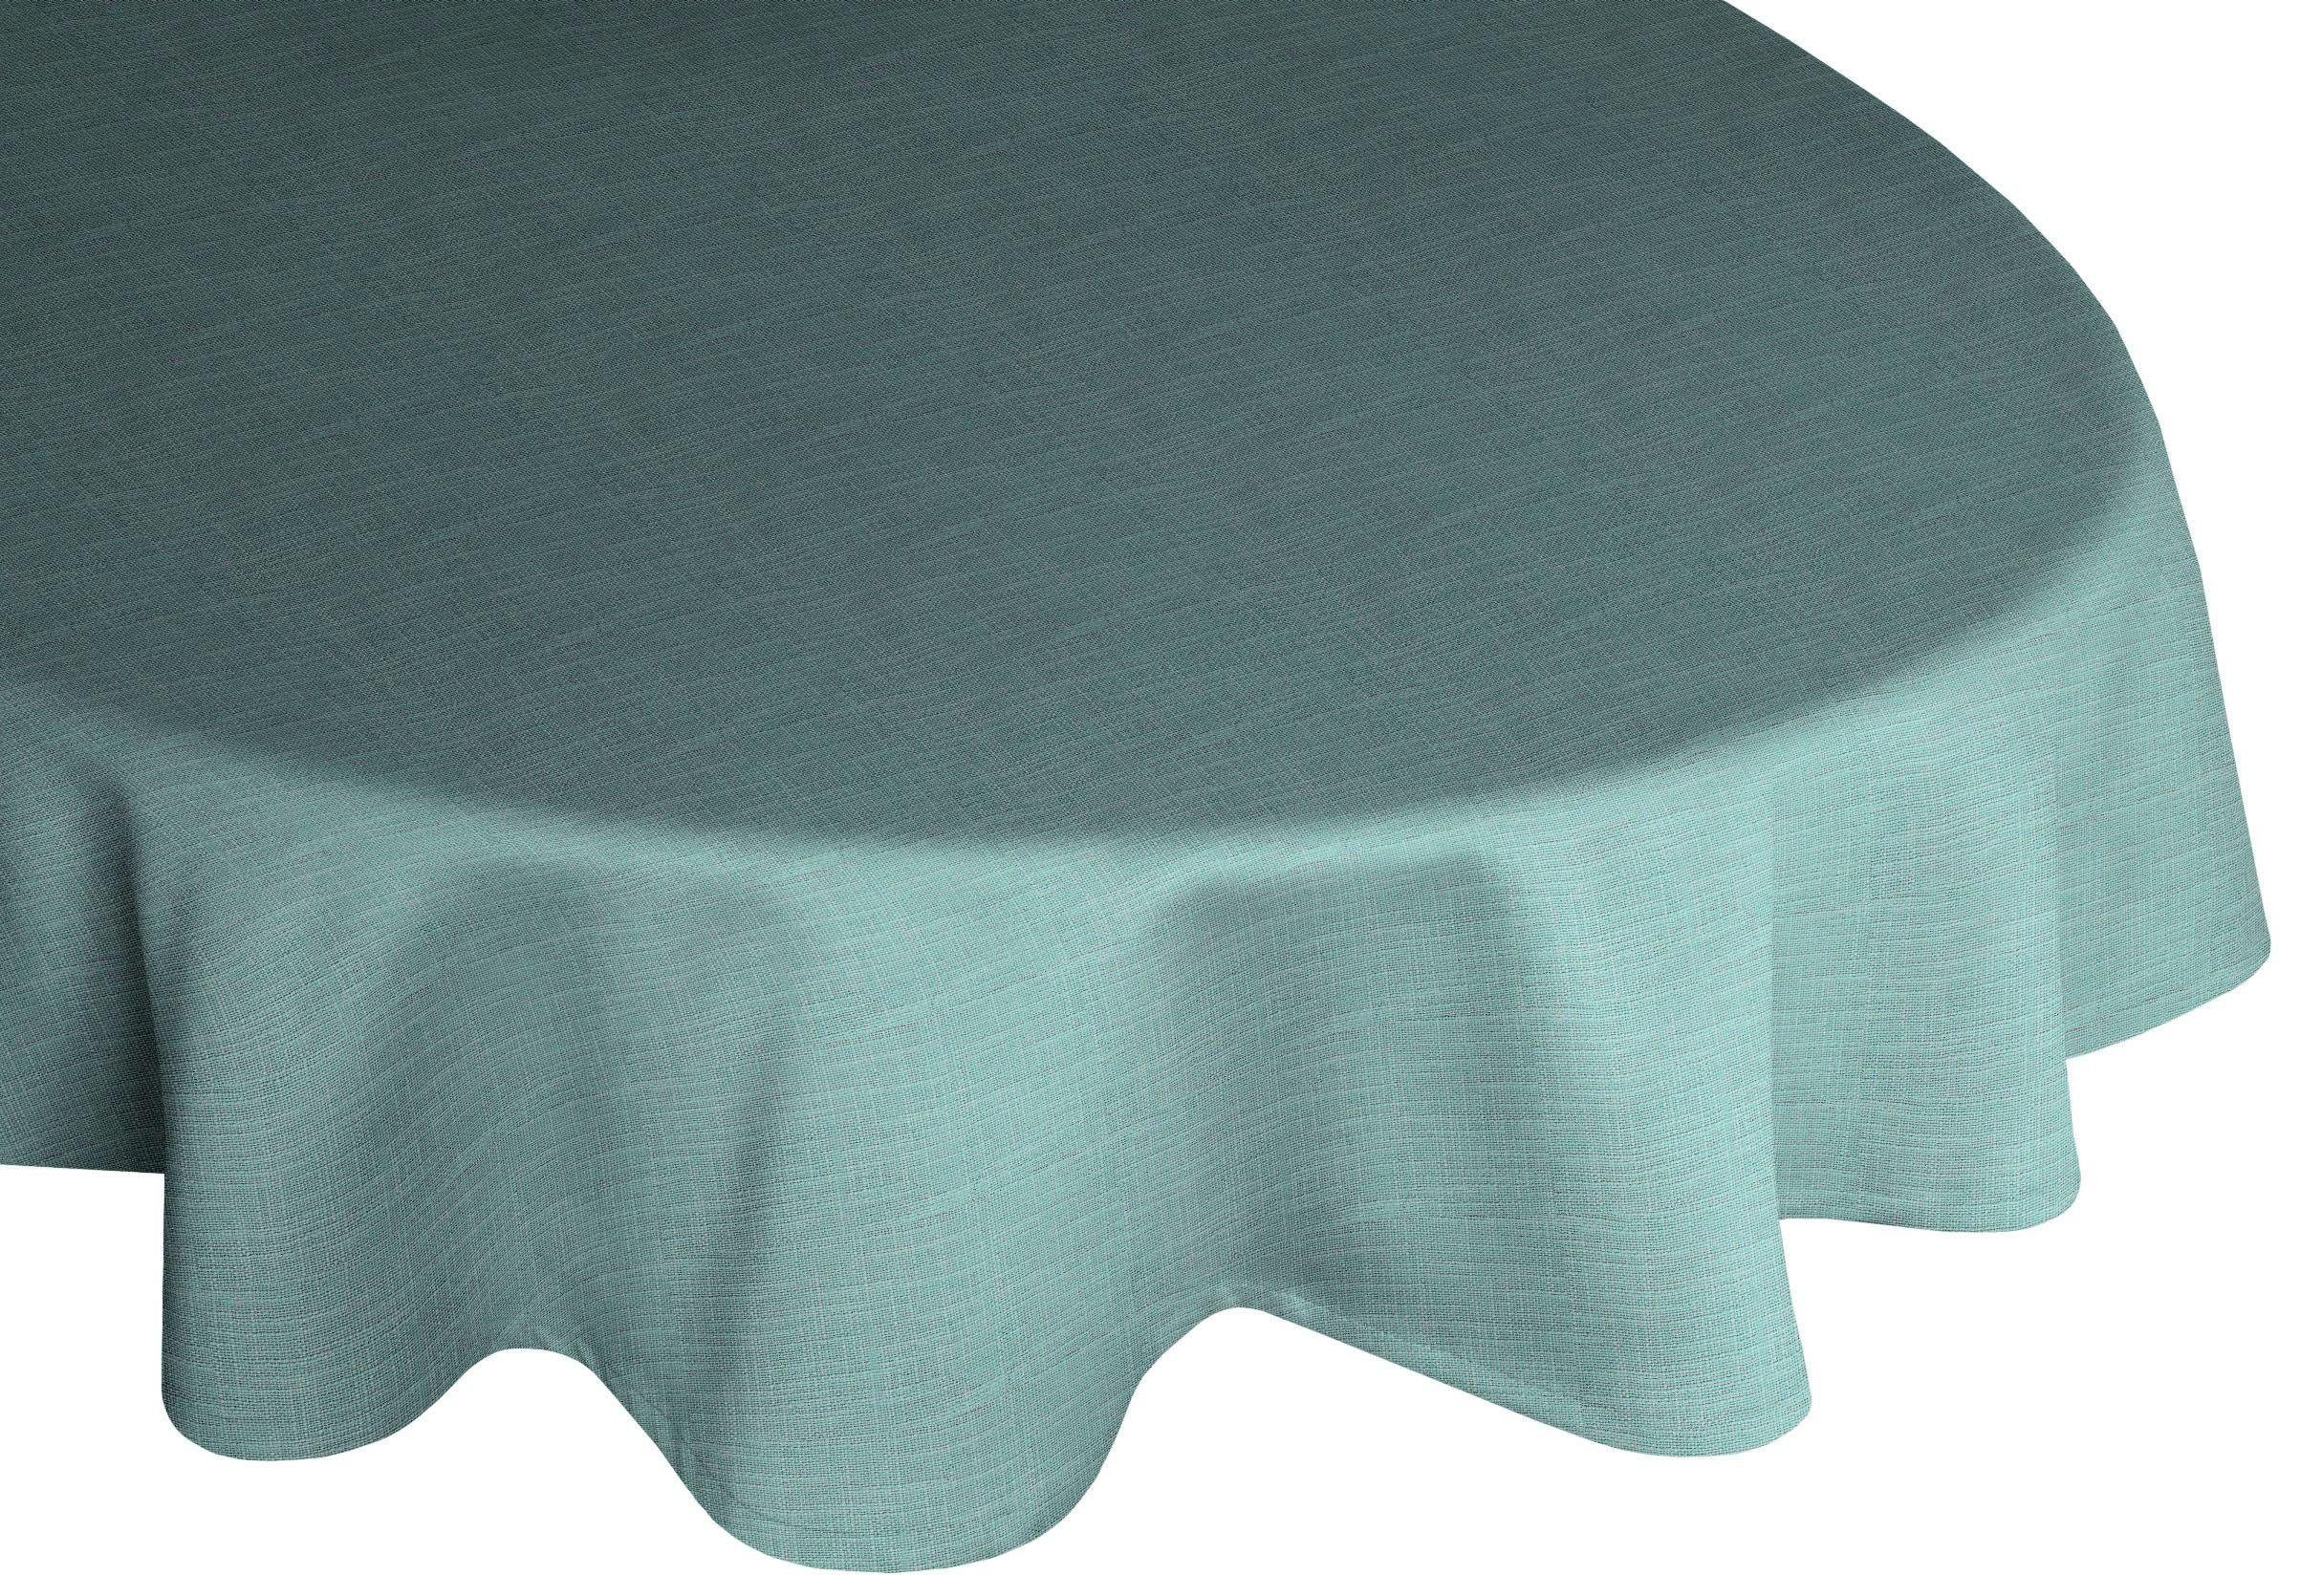 Wirth Tischdecke WIESSEE, oval grün | Tischdecken